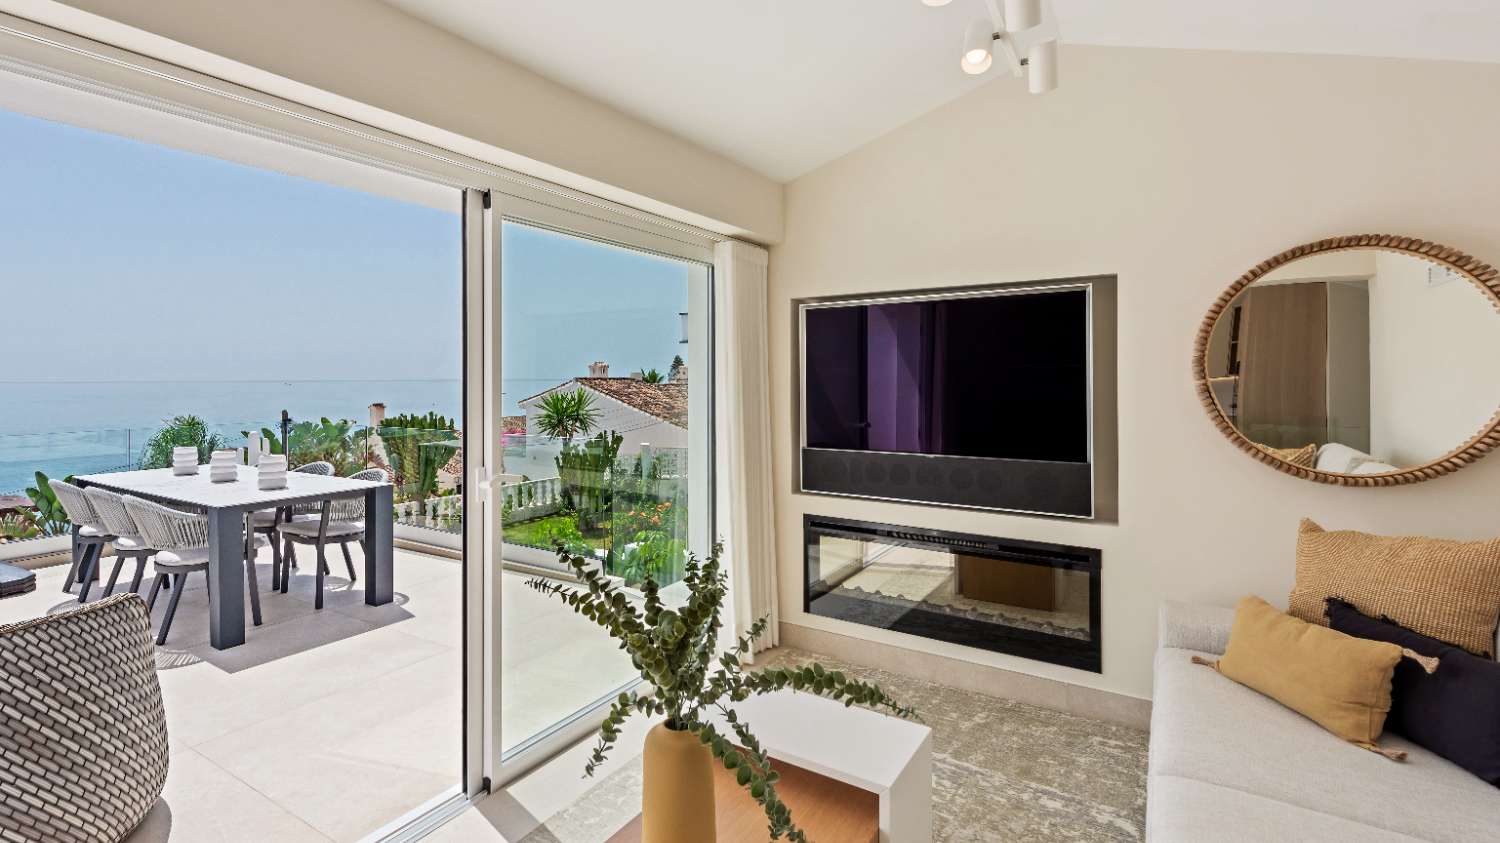 Prachtige gerenoveerde villa met uitzicht op zee naast het strand in Estepona